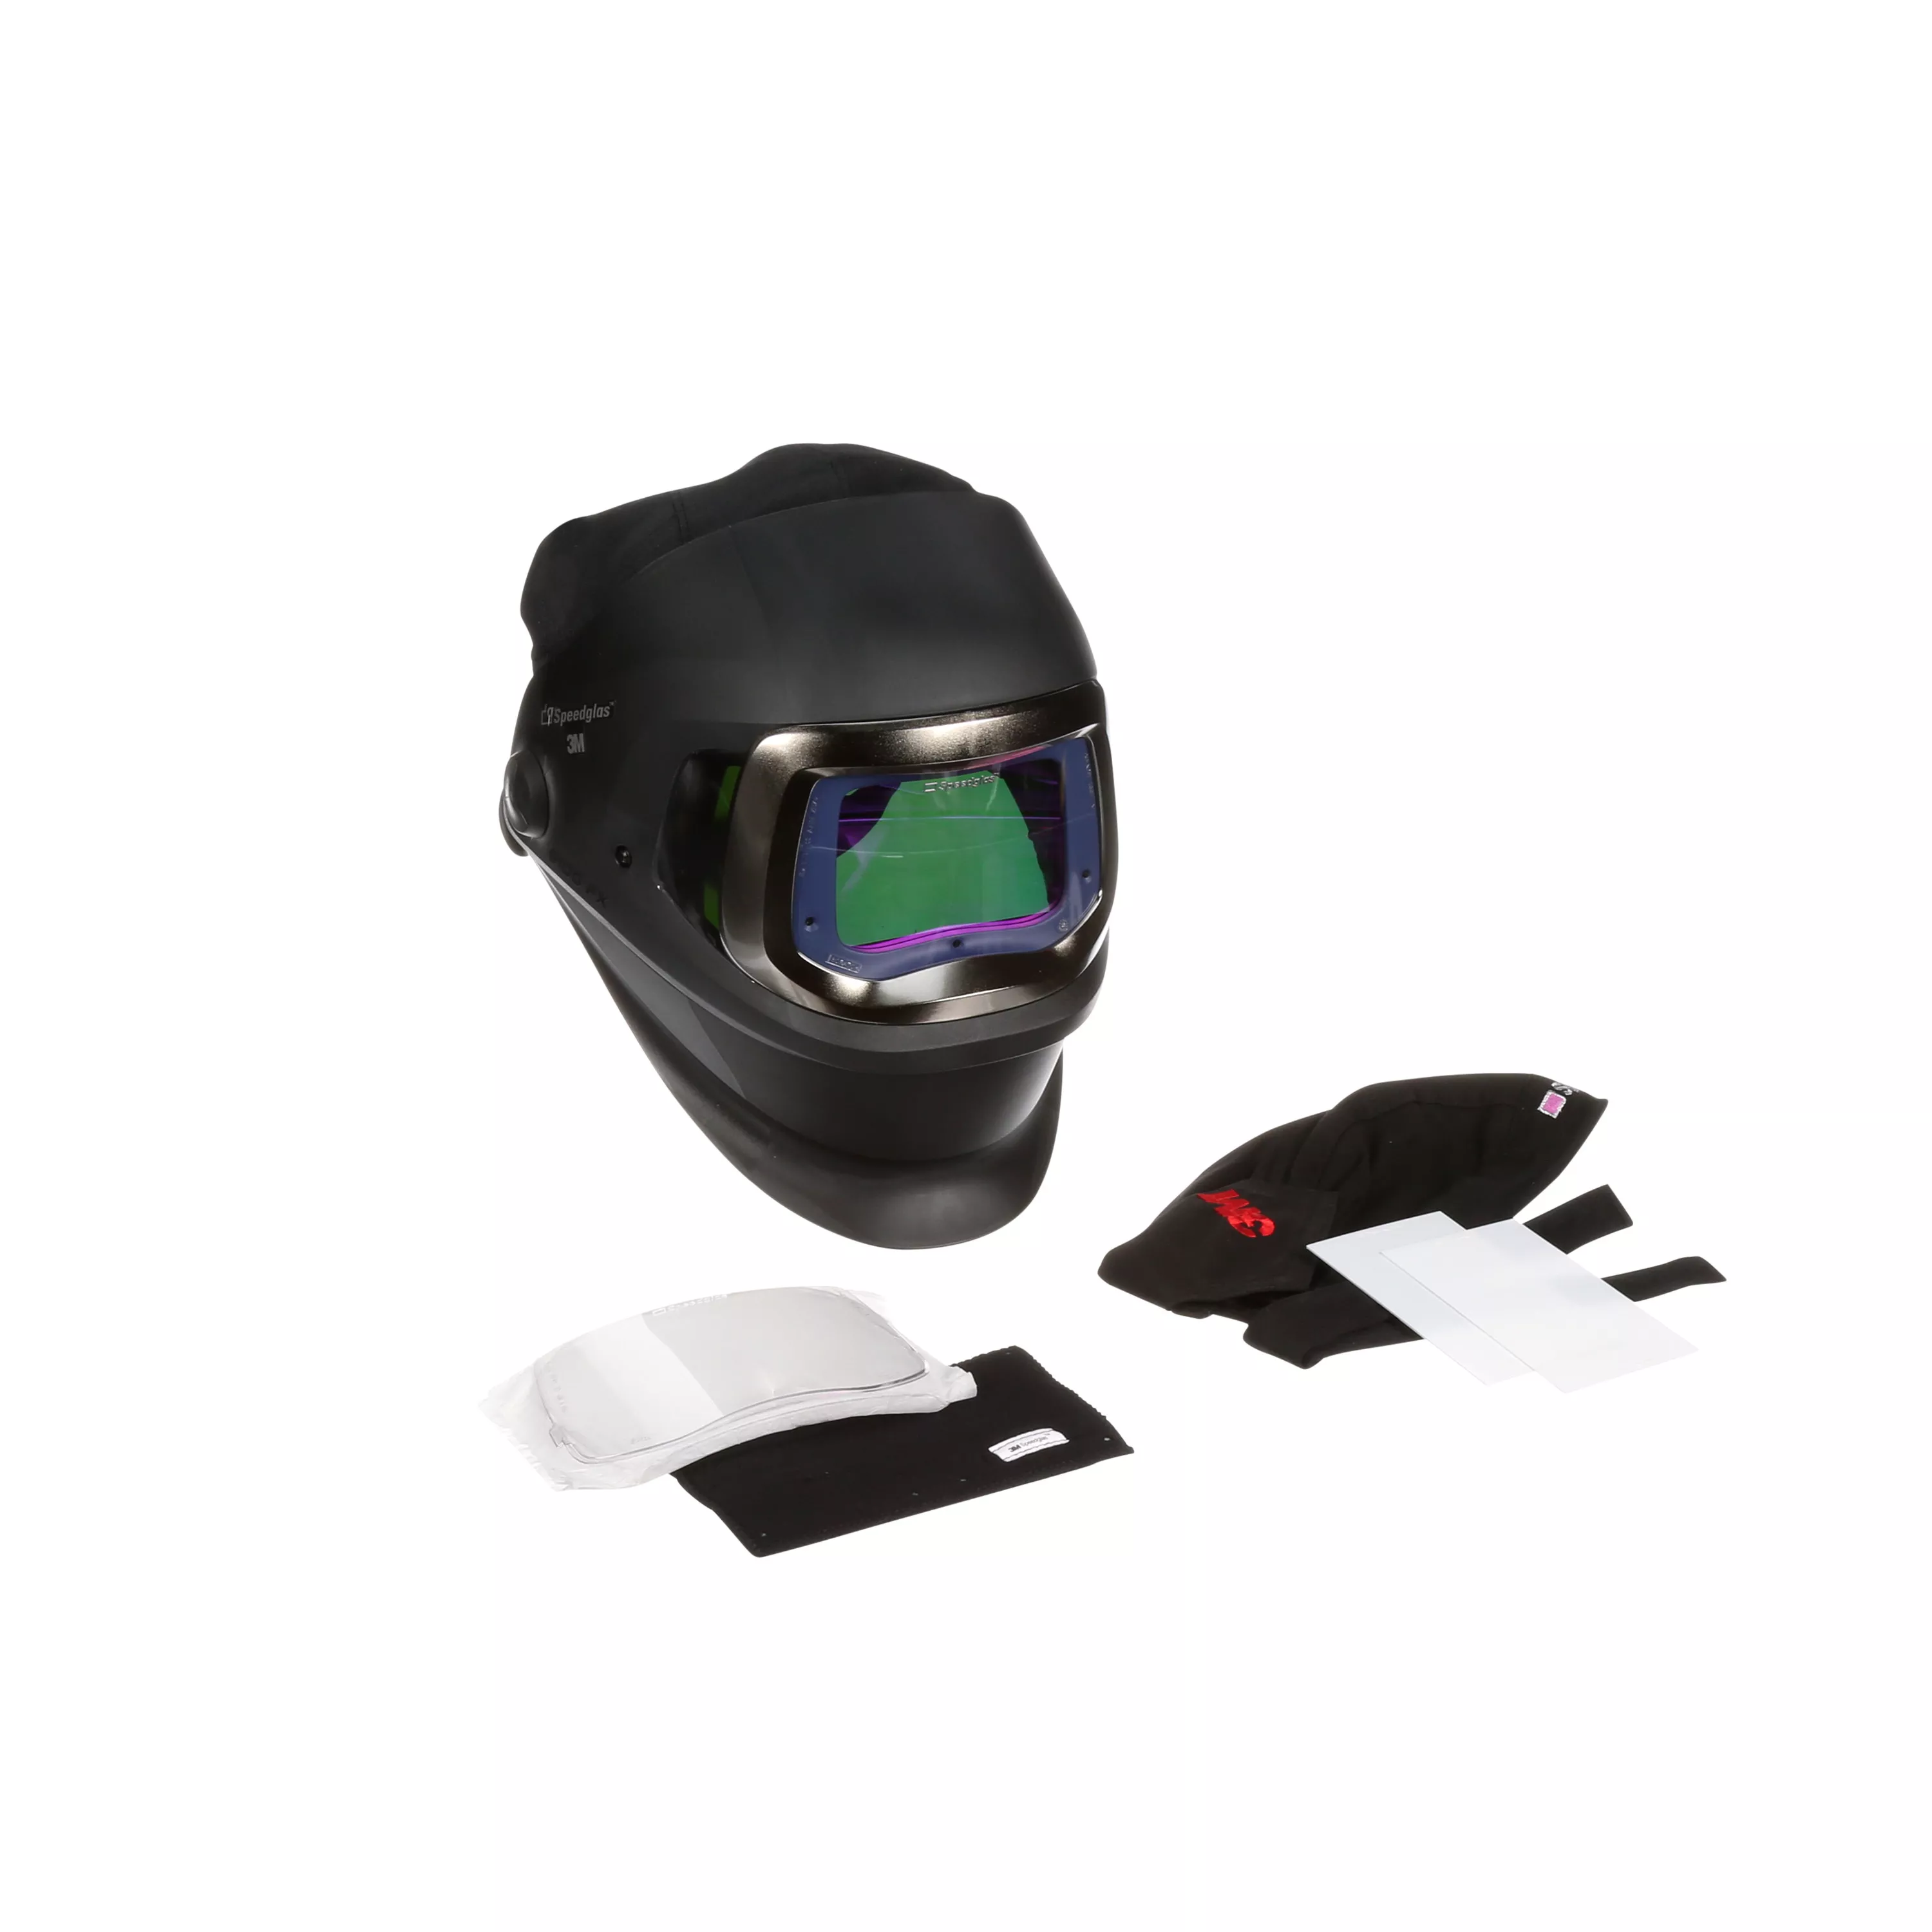 SKU 7100259848 | 3M™ Speedglas™ Welding Helmet 9100FX 06-0600-30iSW